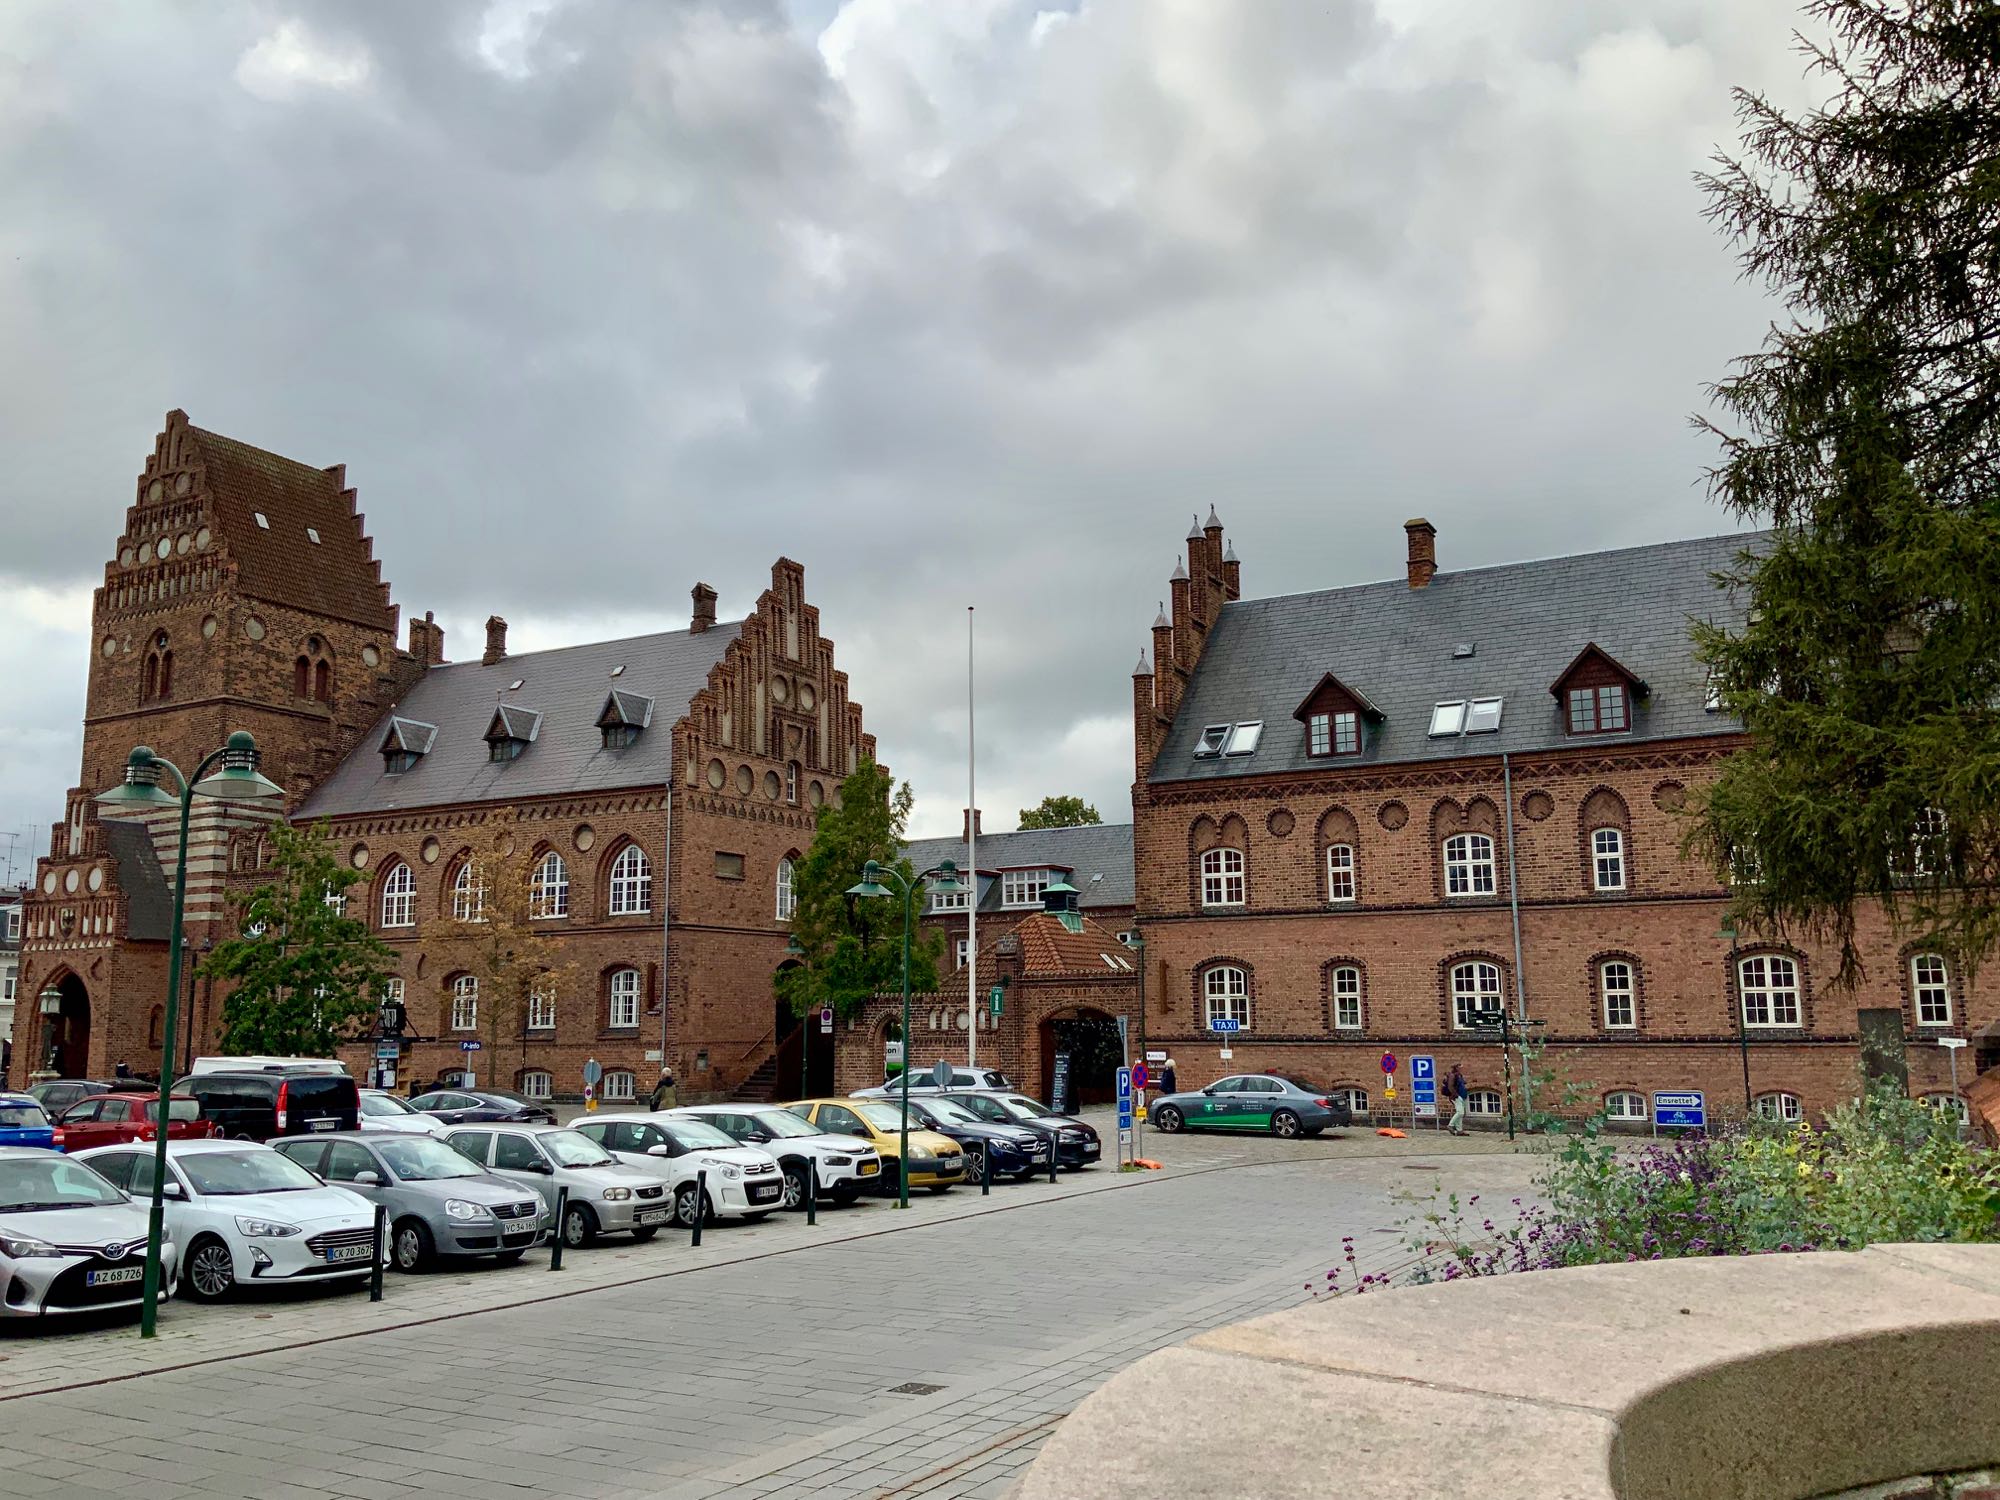 Byens Hus Roskilde